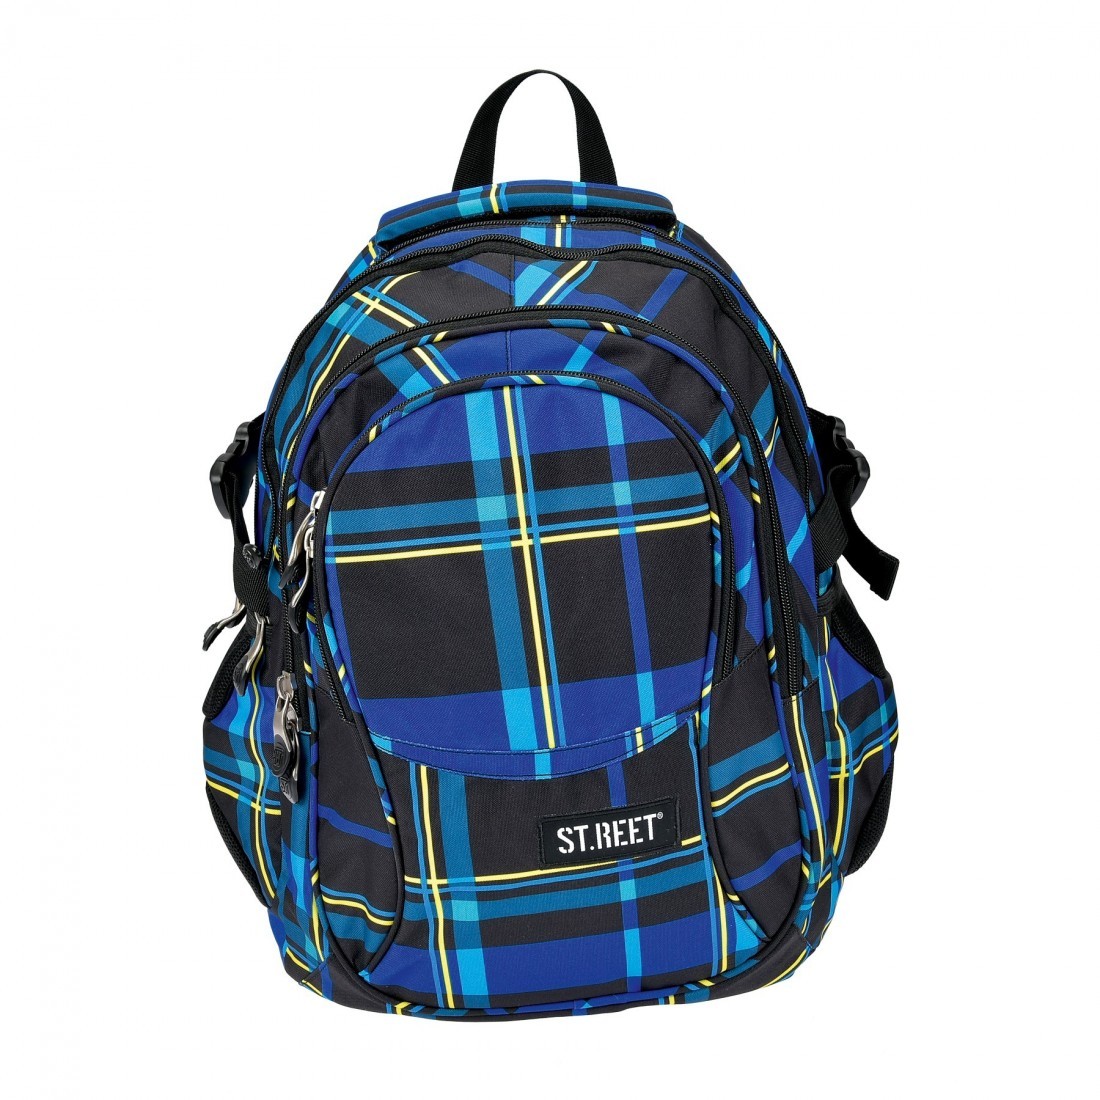 Plecak młodzieżowy 01 ST.REET czarno - niebieski w kratkę CHEQUERED 5 BLACK&NAVY - plecak-tornister.pl